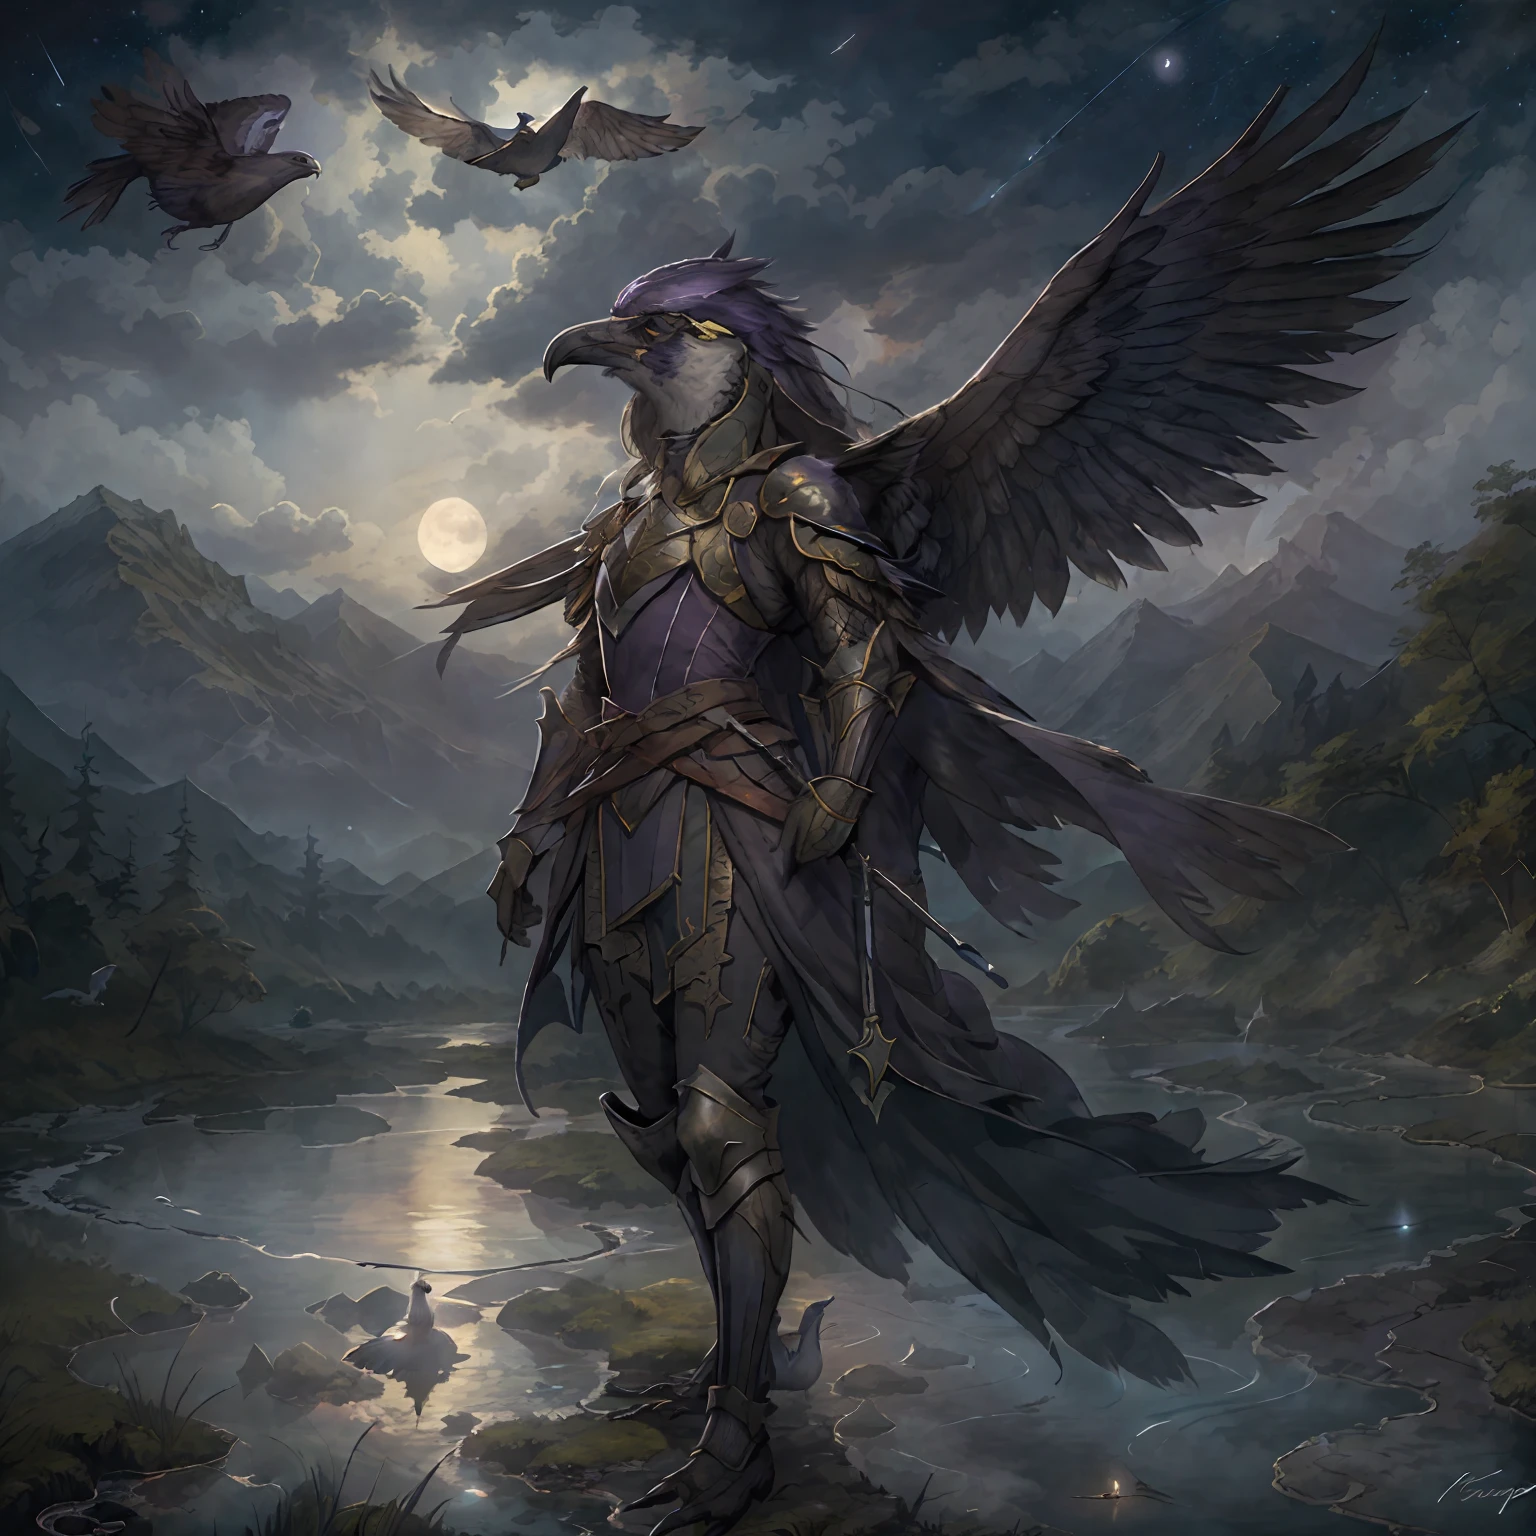 шедевр, Лучшее качество, (Один), птица, painting of Aven a Dark Purple птица woman wearing armor, средневековая обстановка, в потоке, детальное ночное небо, Красивая луна, слои темных облаков, летающий, летающий over mountains, посадочные крылья